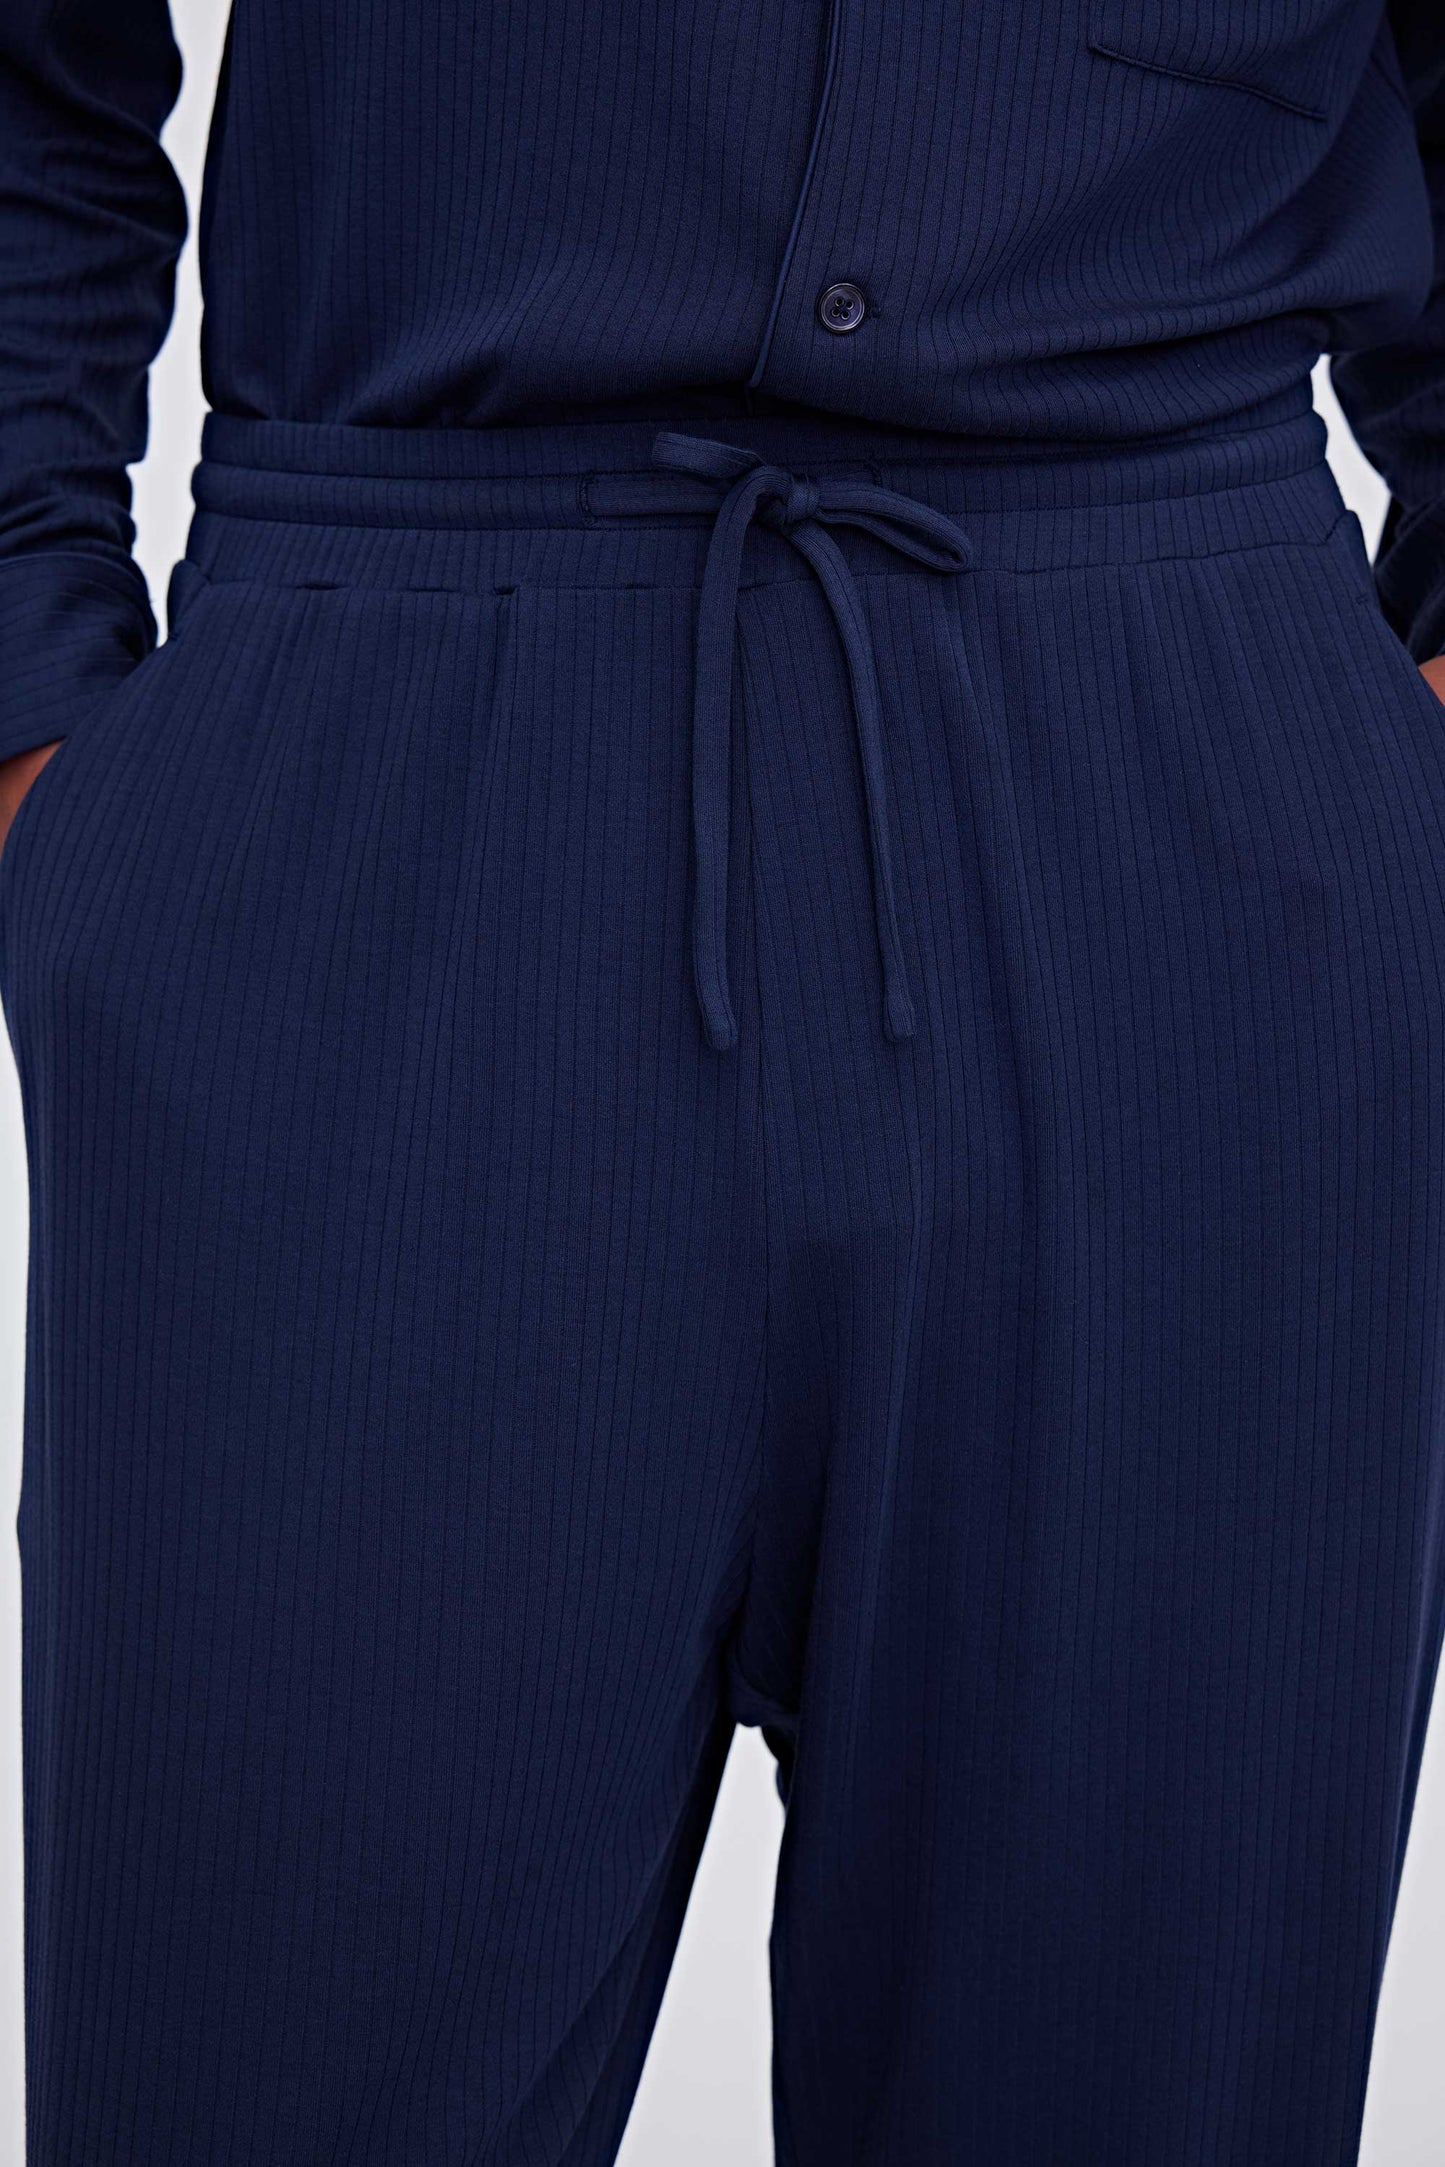 close up of navy pajama pants waist